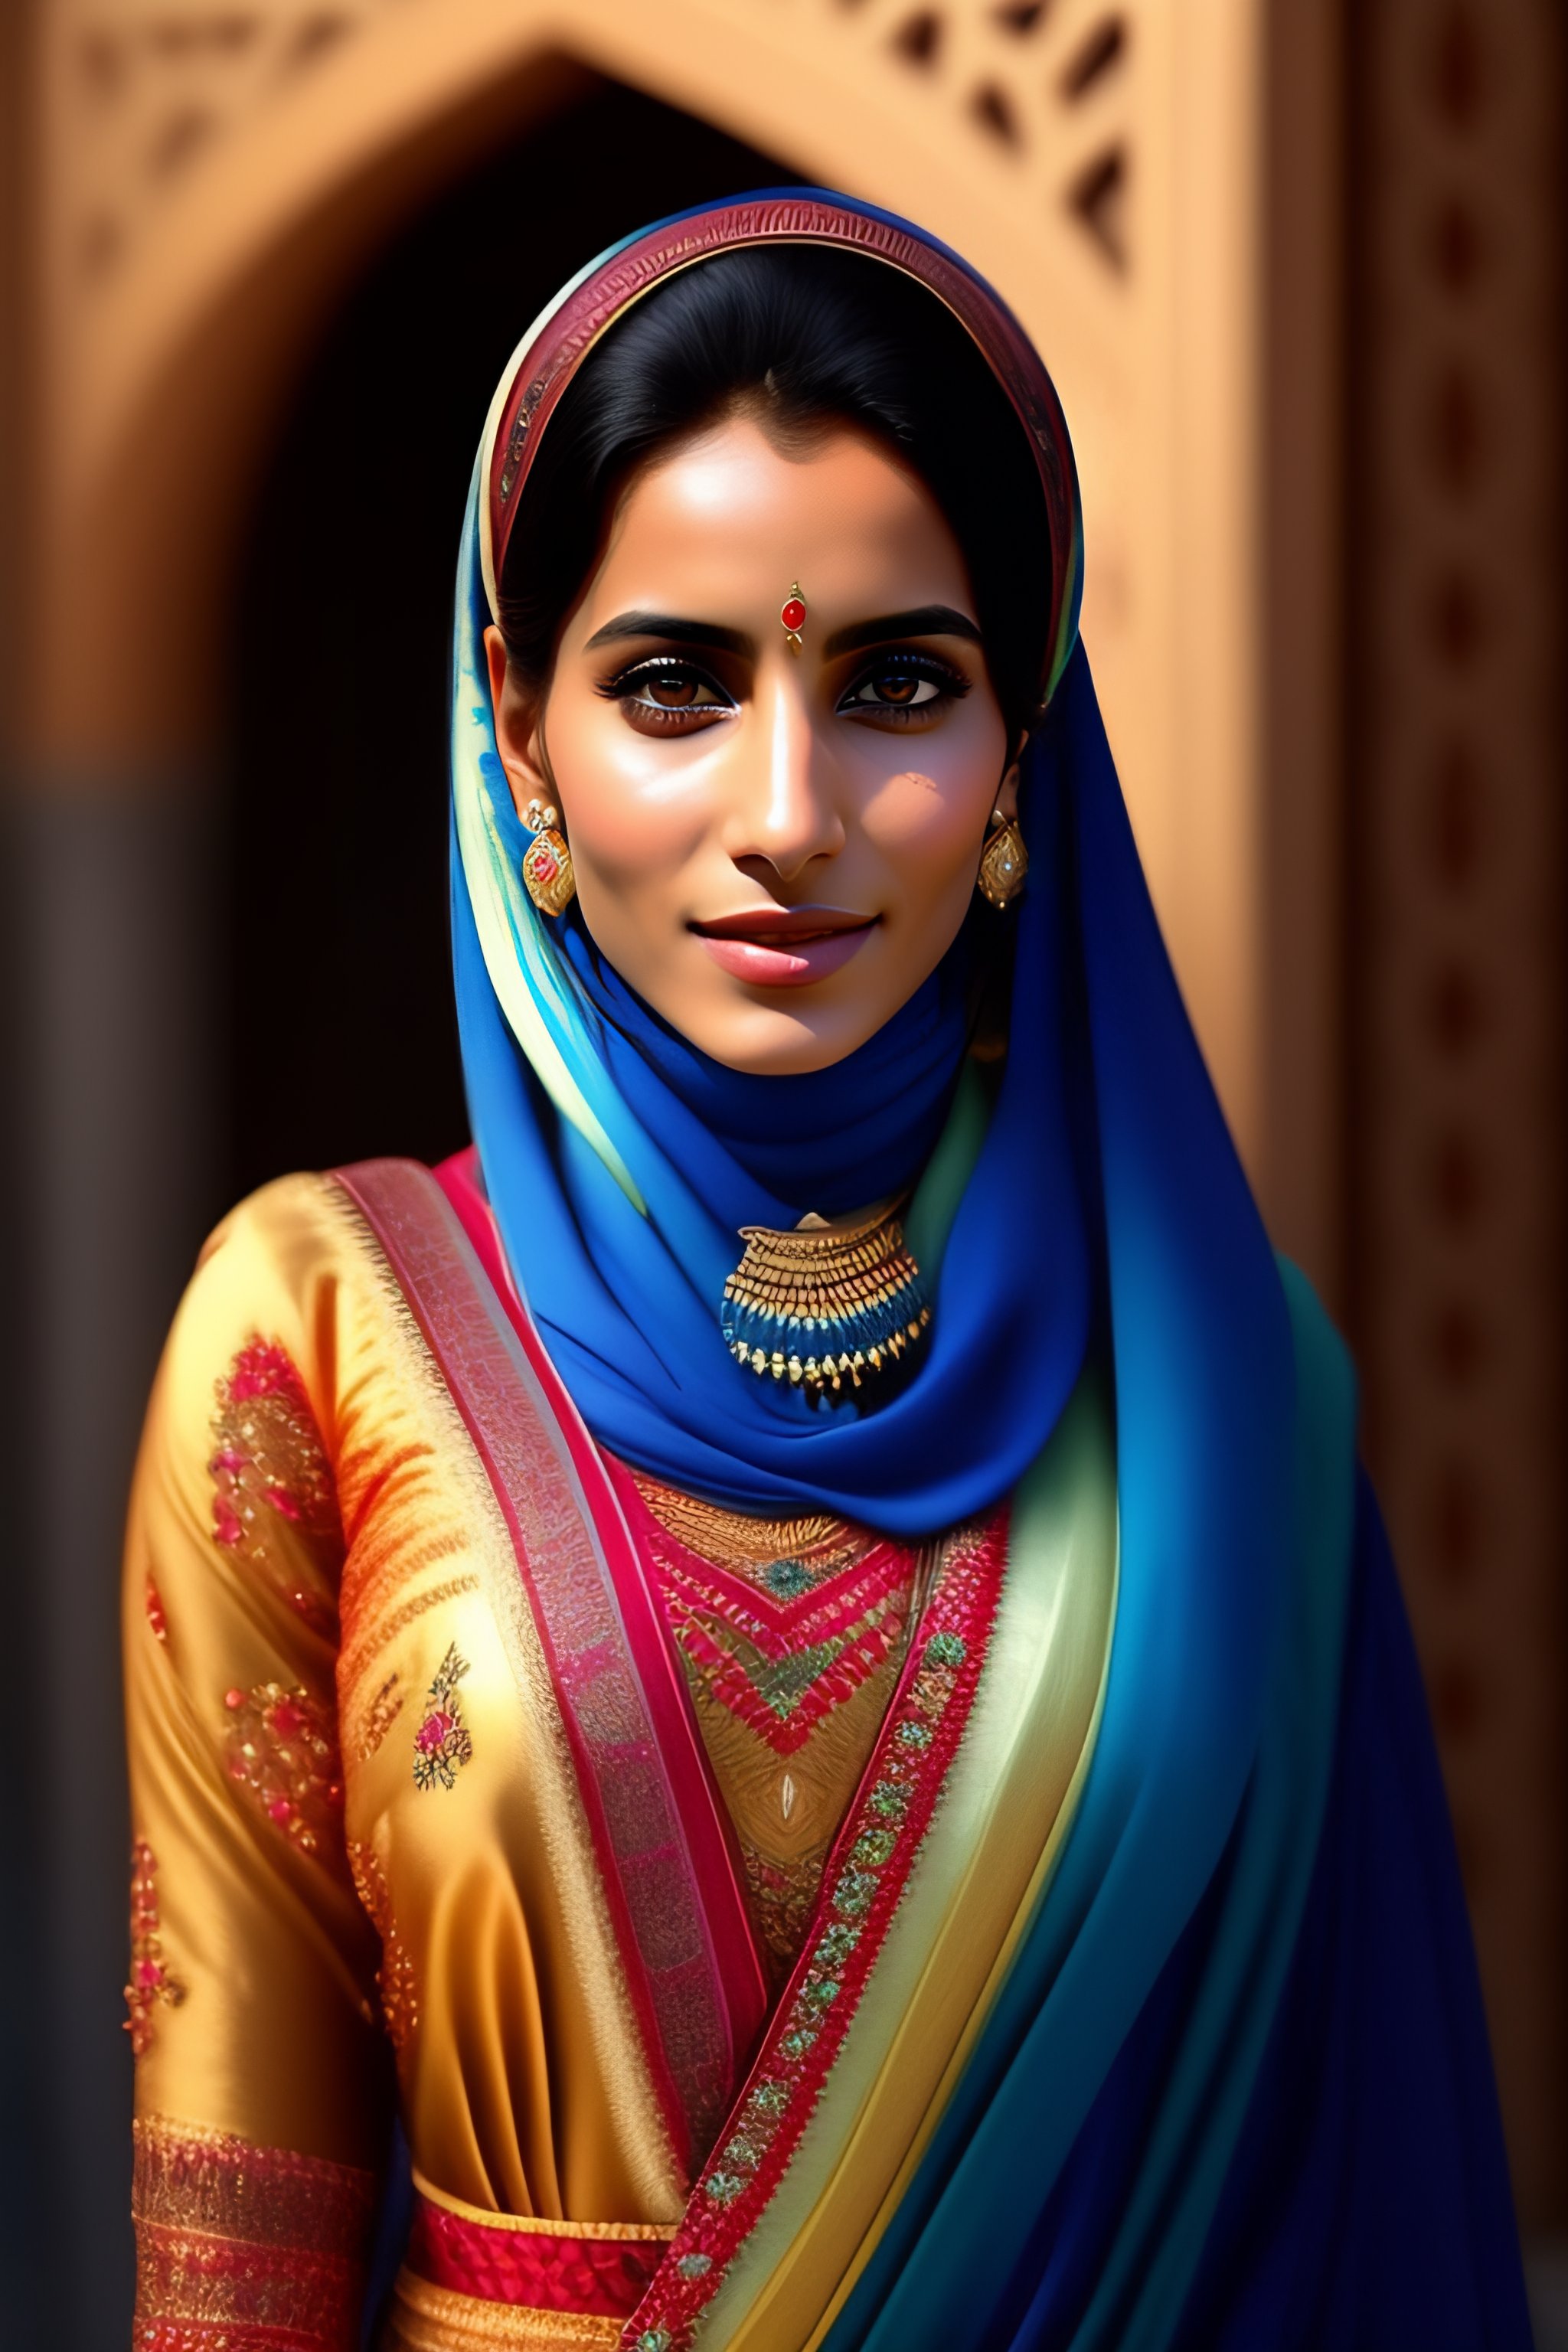 Lexica - The most beautiful Yemeni women with Yemeni dress